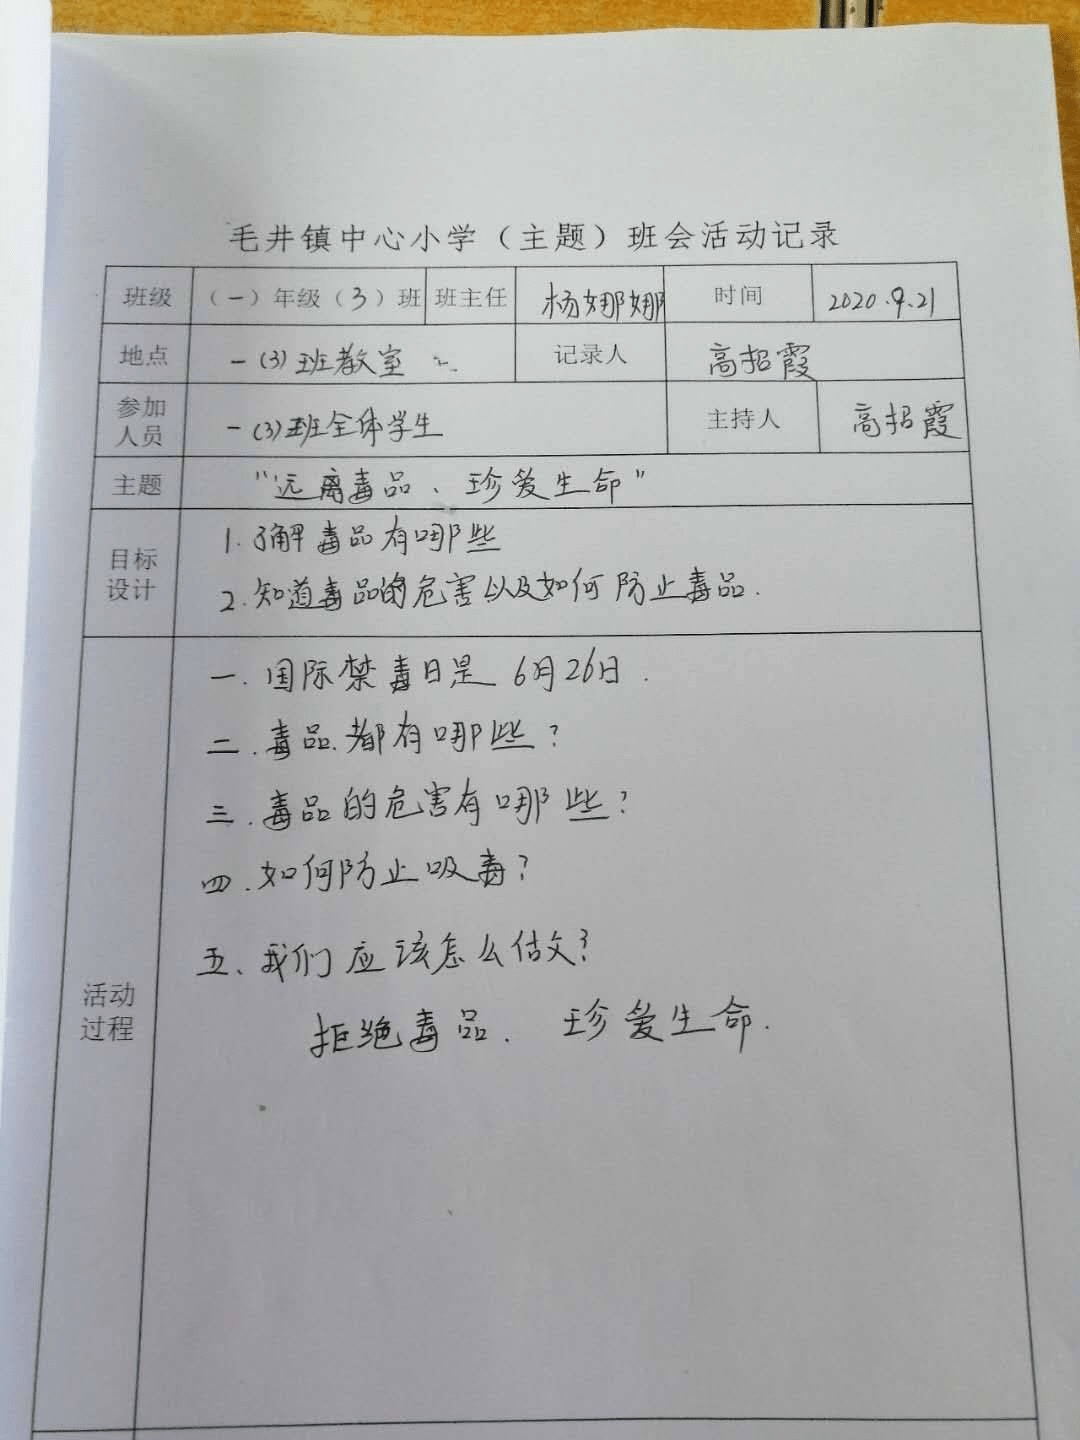 毛井镇中小学开展禁毒教育宣传系列活动